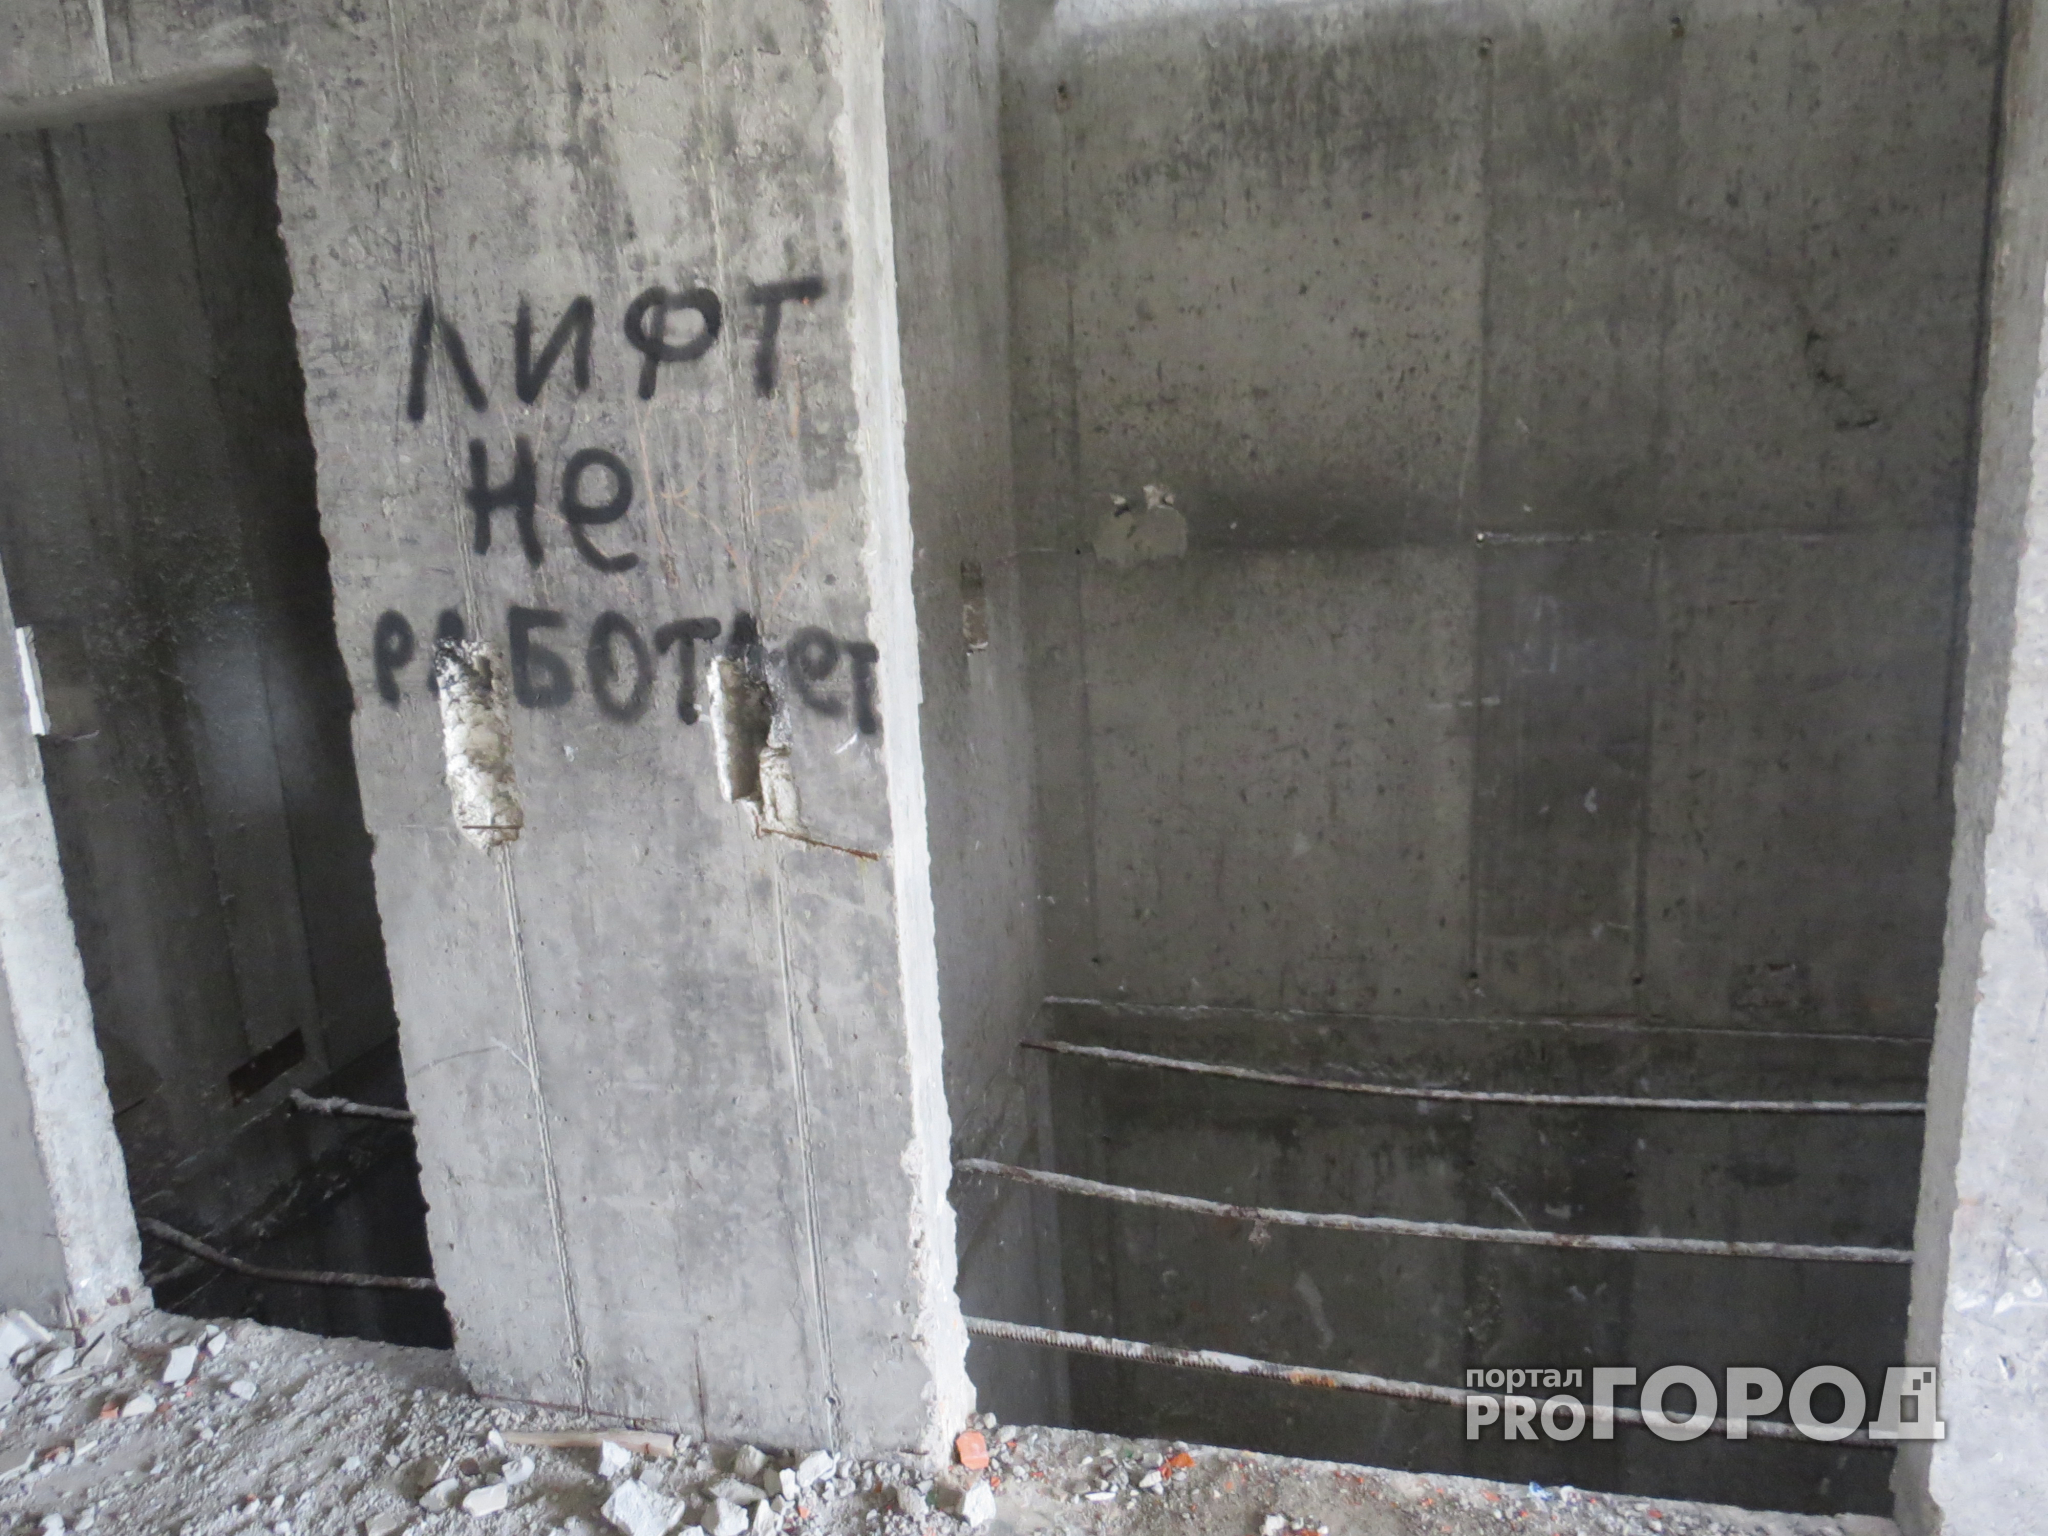 В Чебоксарах после падения мужчины, строительную компанию заставят доделать лифт